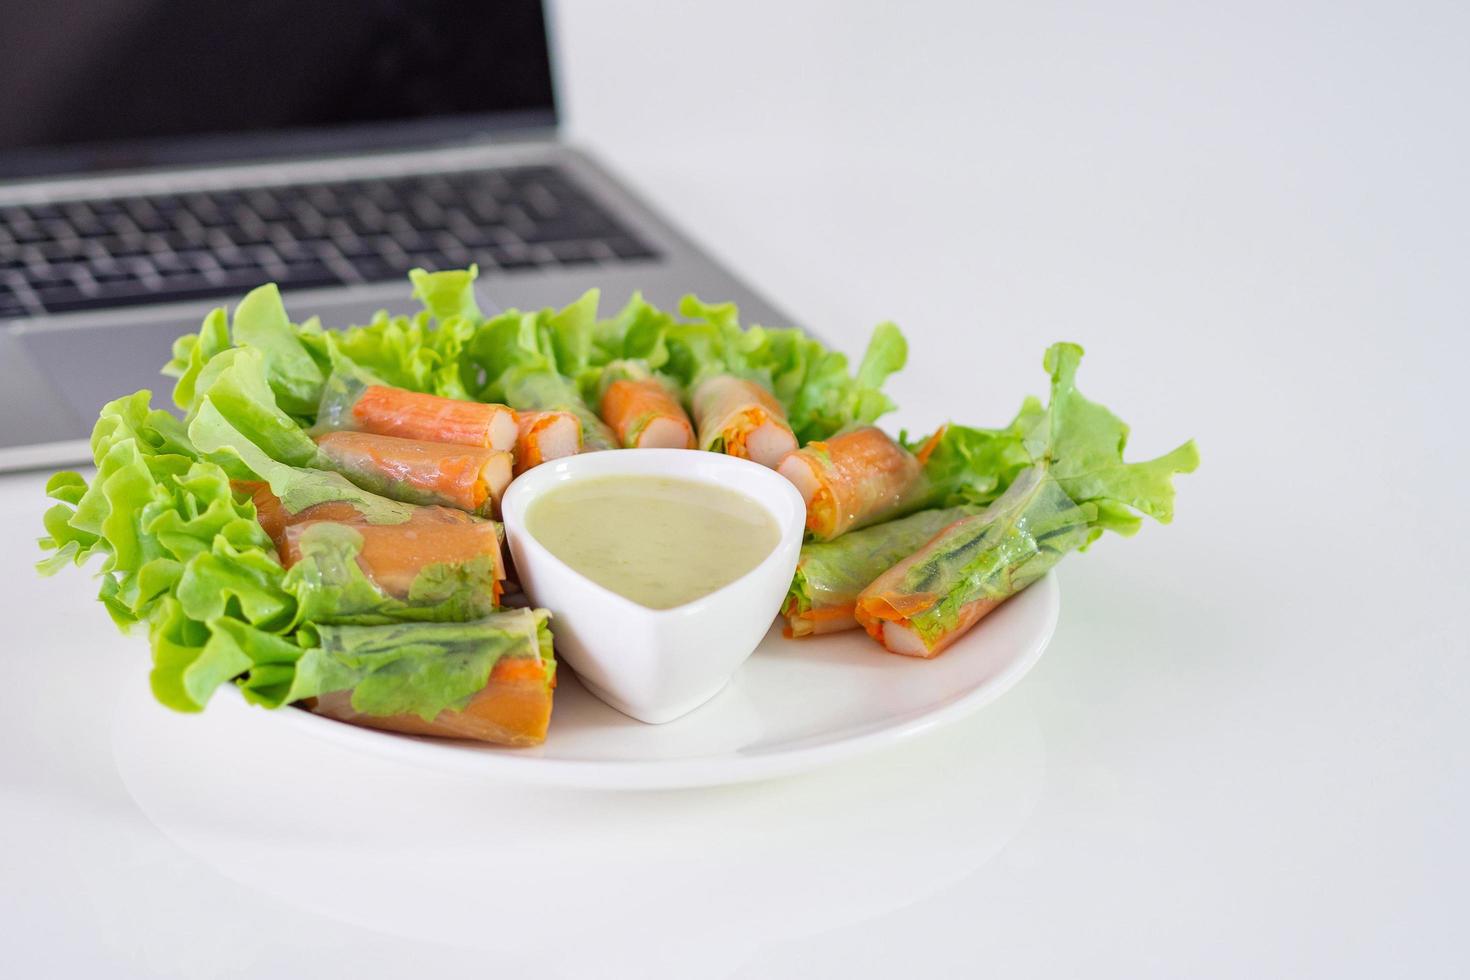 krabstick en groentensalade in noedelbuis op witte schotel bij laptop foto